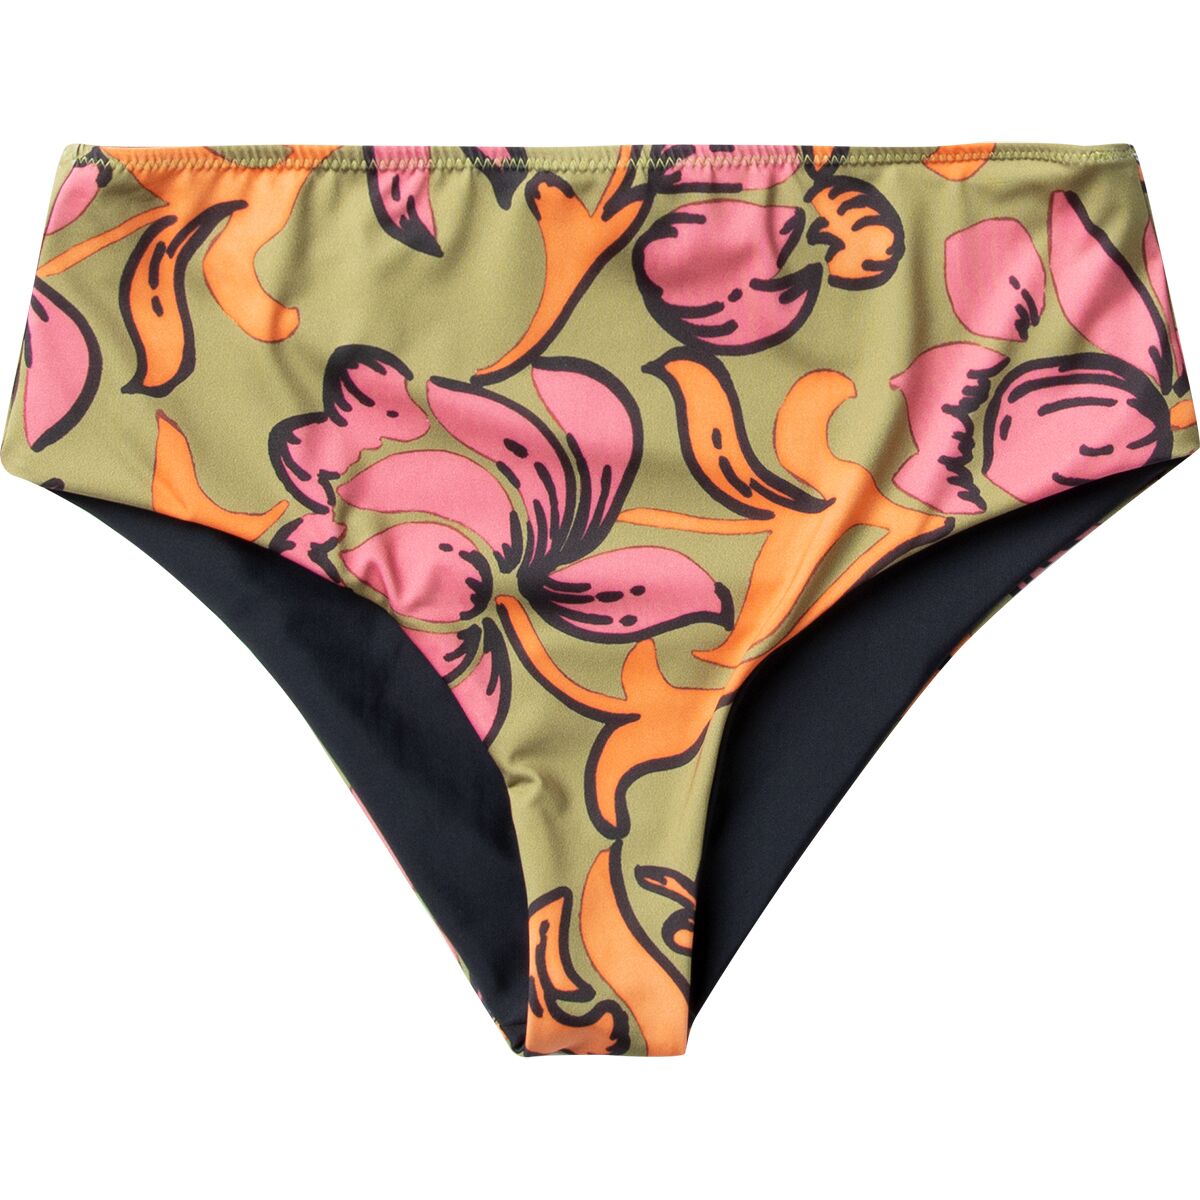 Seea Swimwear Brasilia Reversible Bikini Bottom - Women's